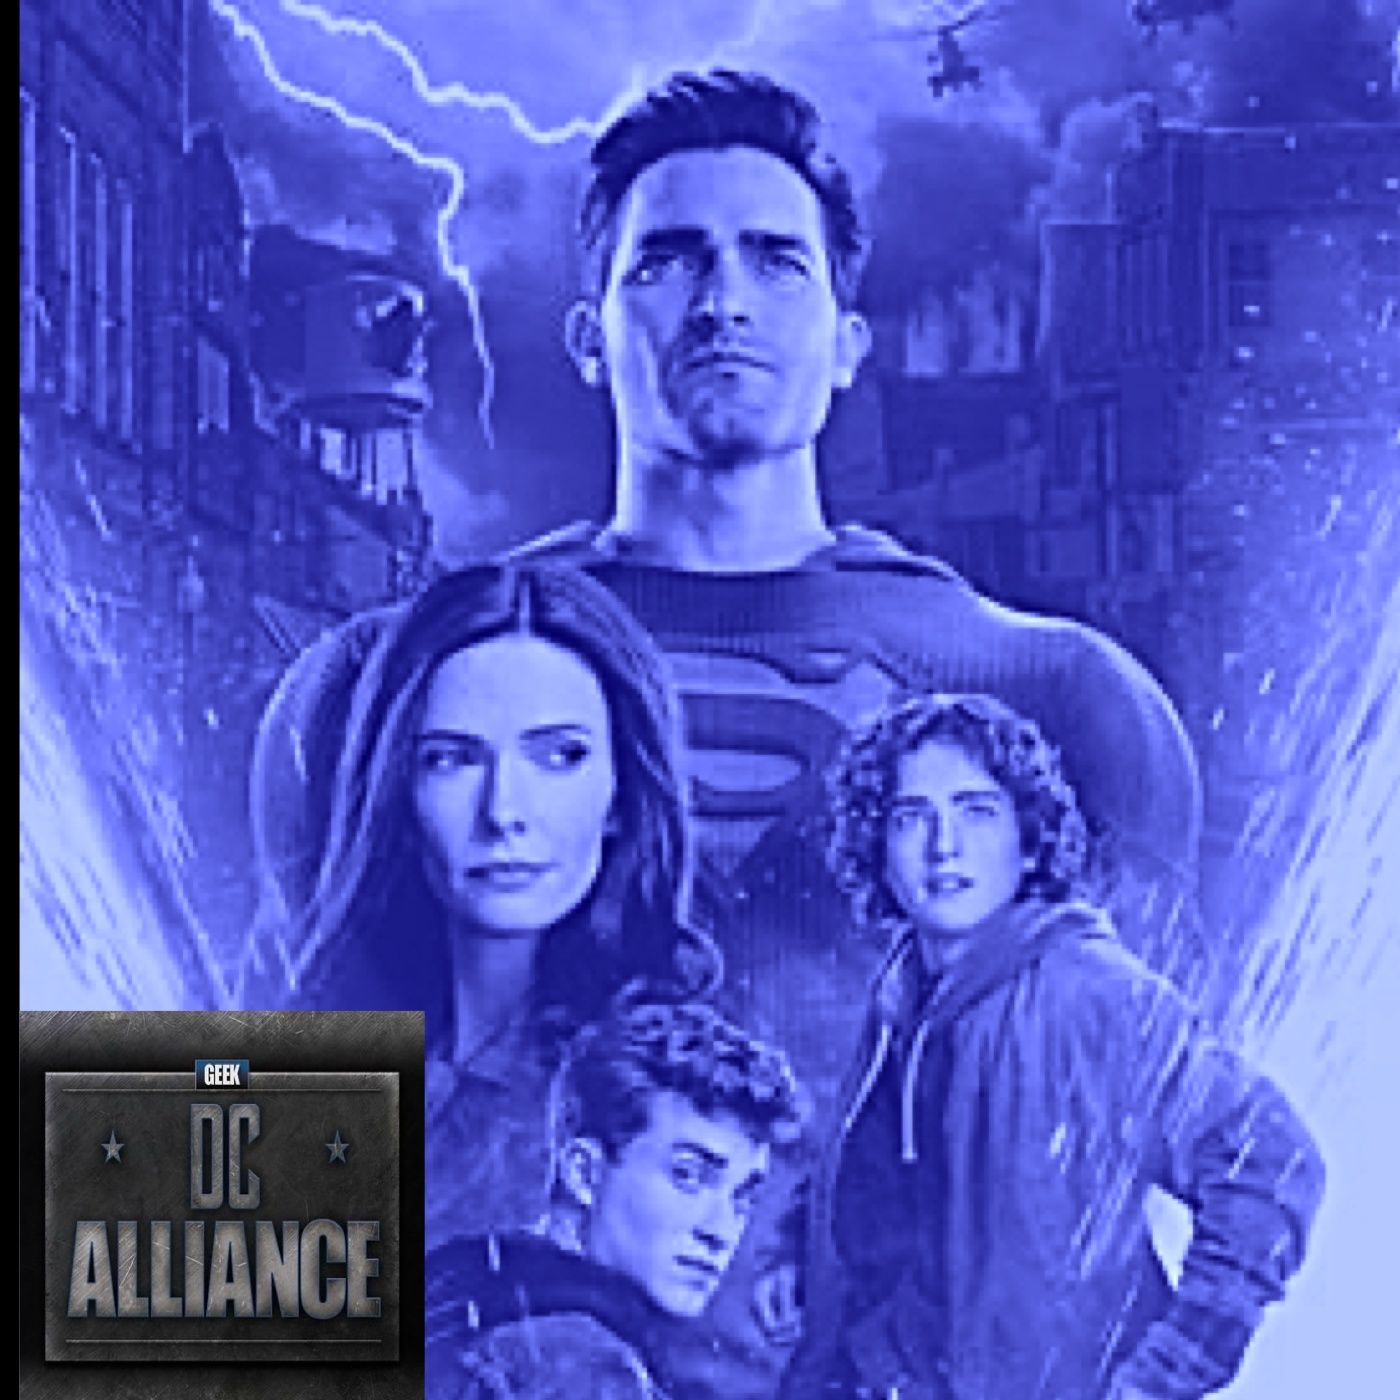 Superman & Lois 2x10 Review: DC Alliance Ch. 110